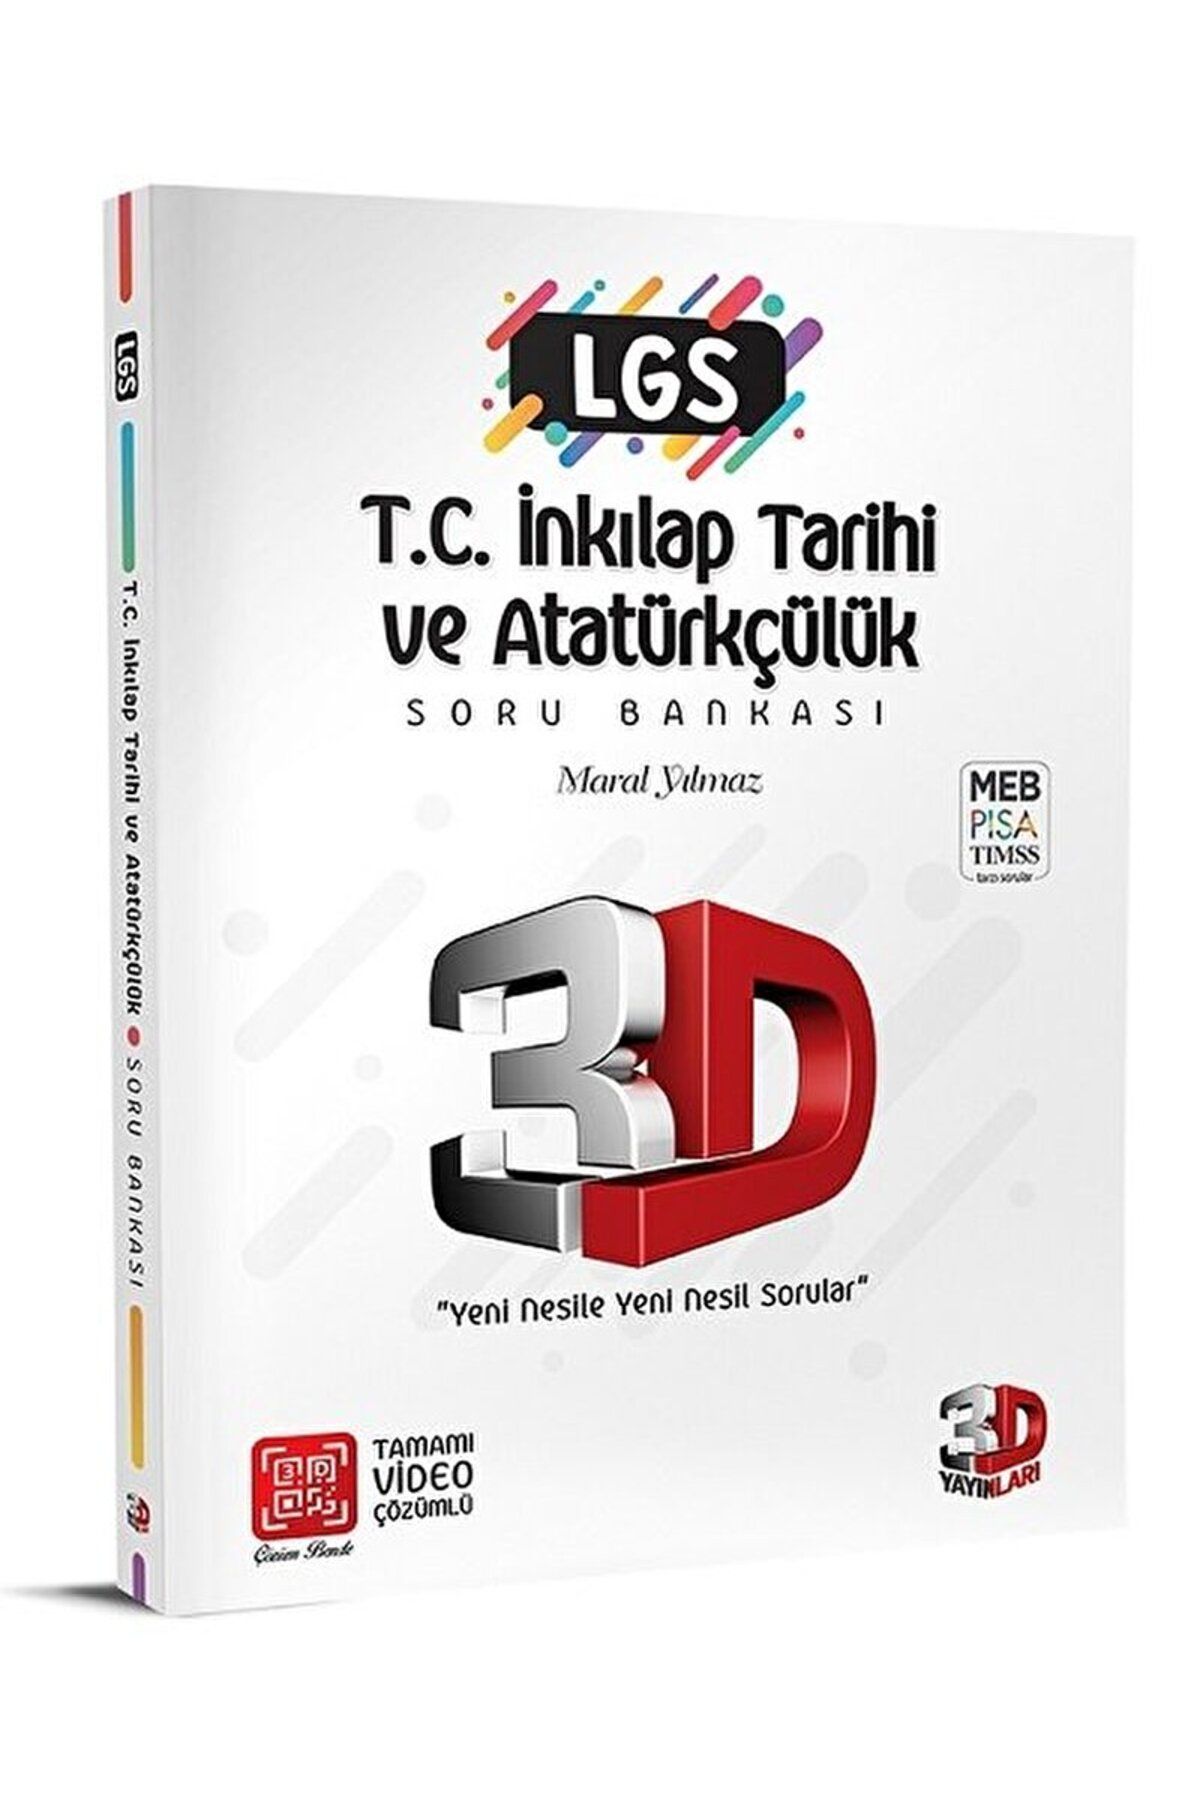 3D Yayınları LGS T.C. İnkılap Tarihi ve Atatürkçülük Soru Bankası Tamamı Video Çözümlü / 9786257851039